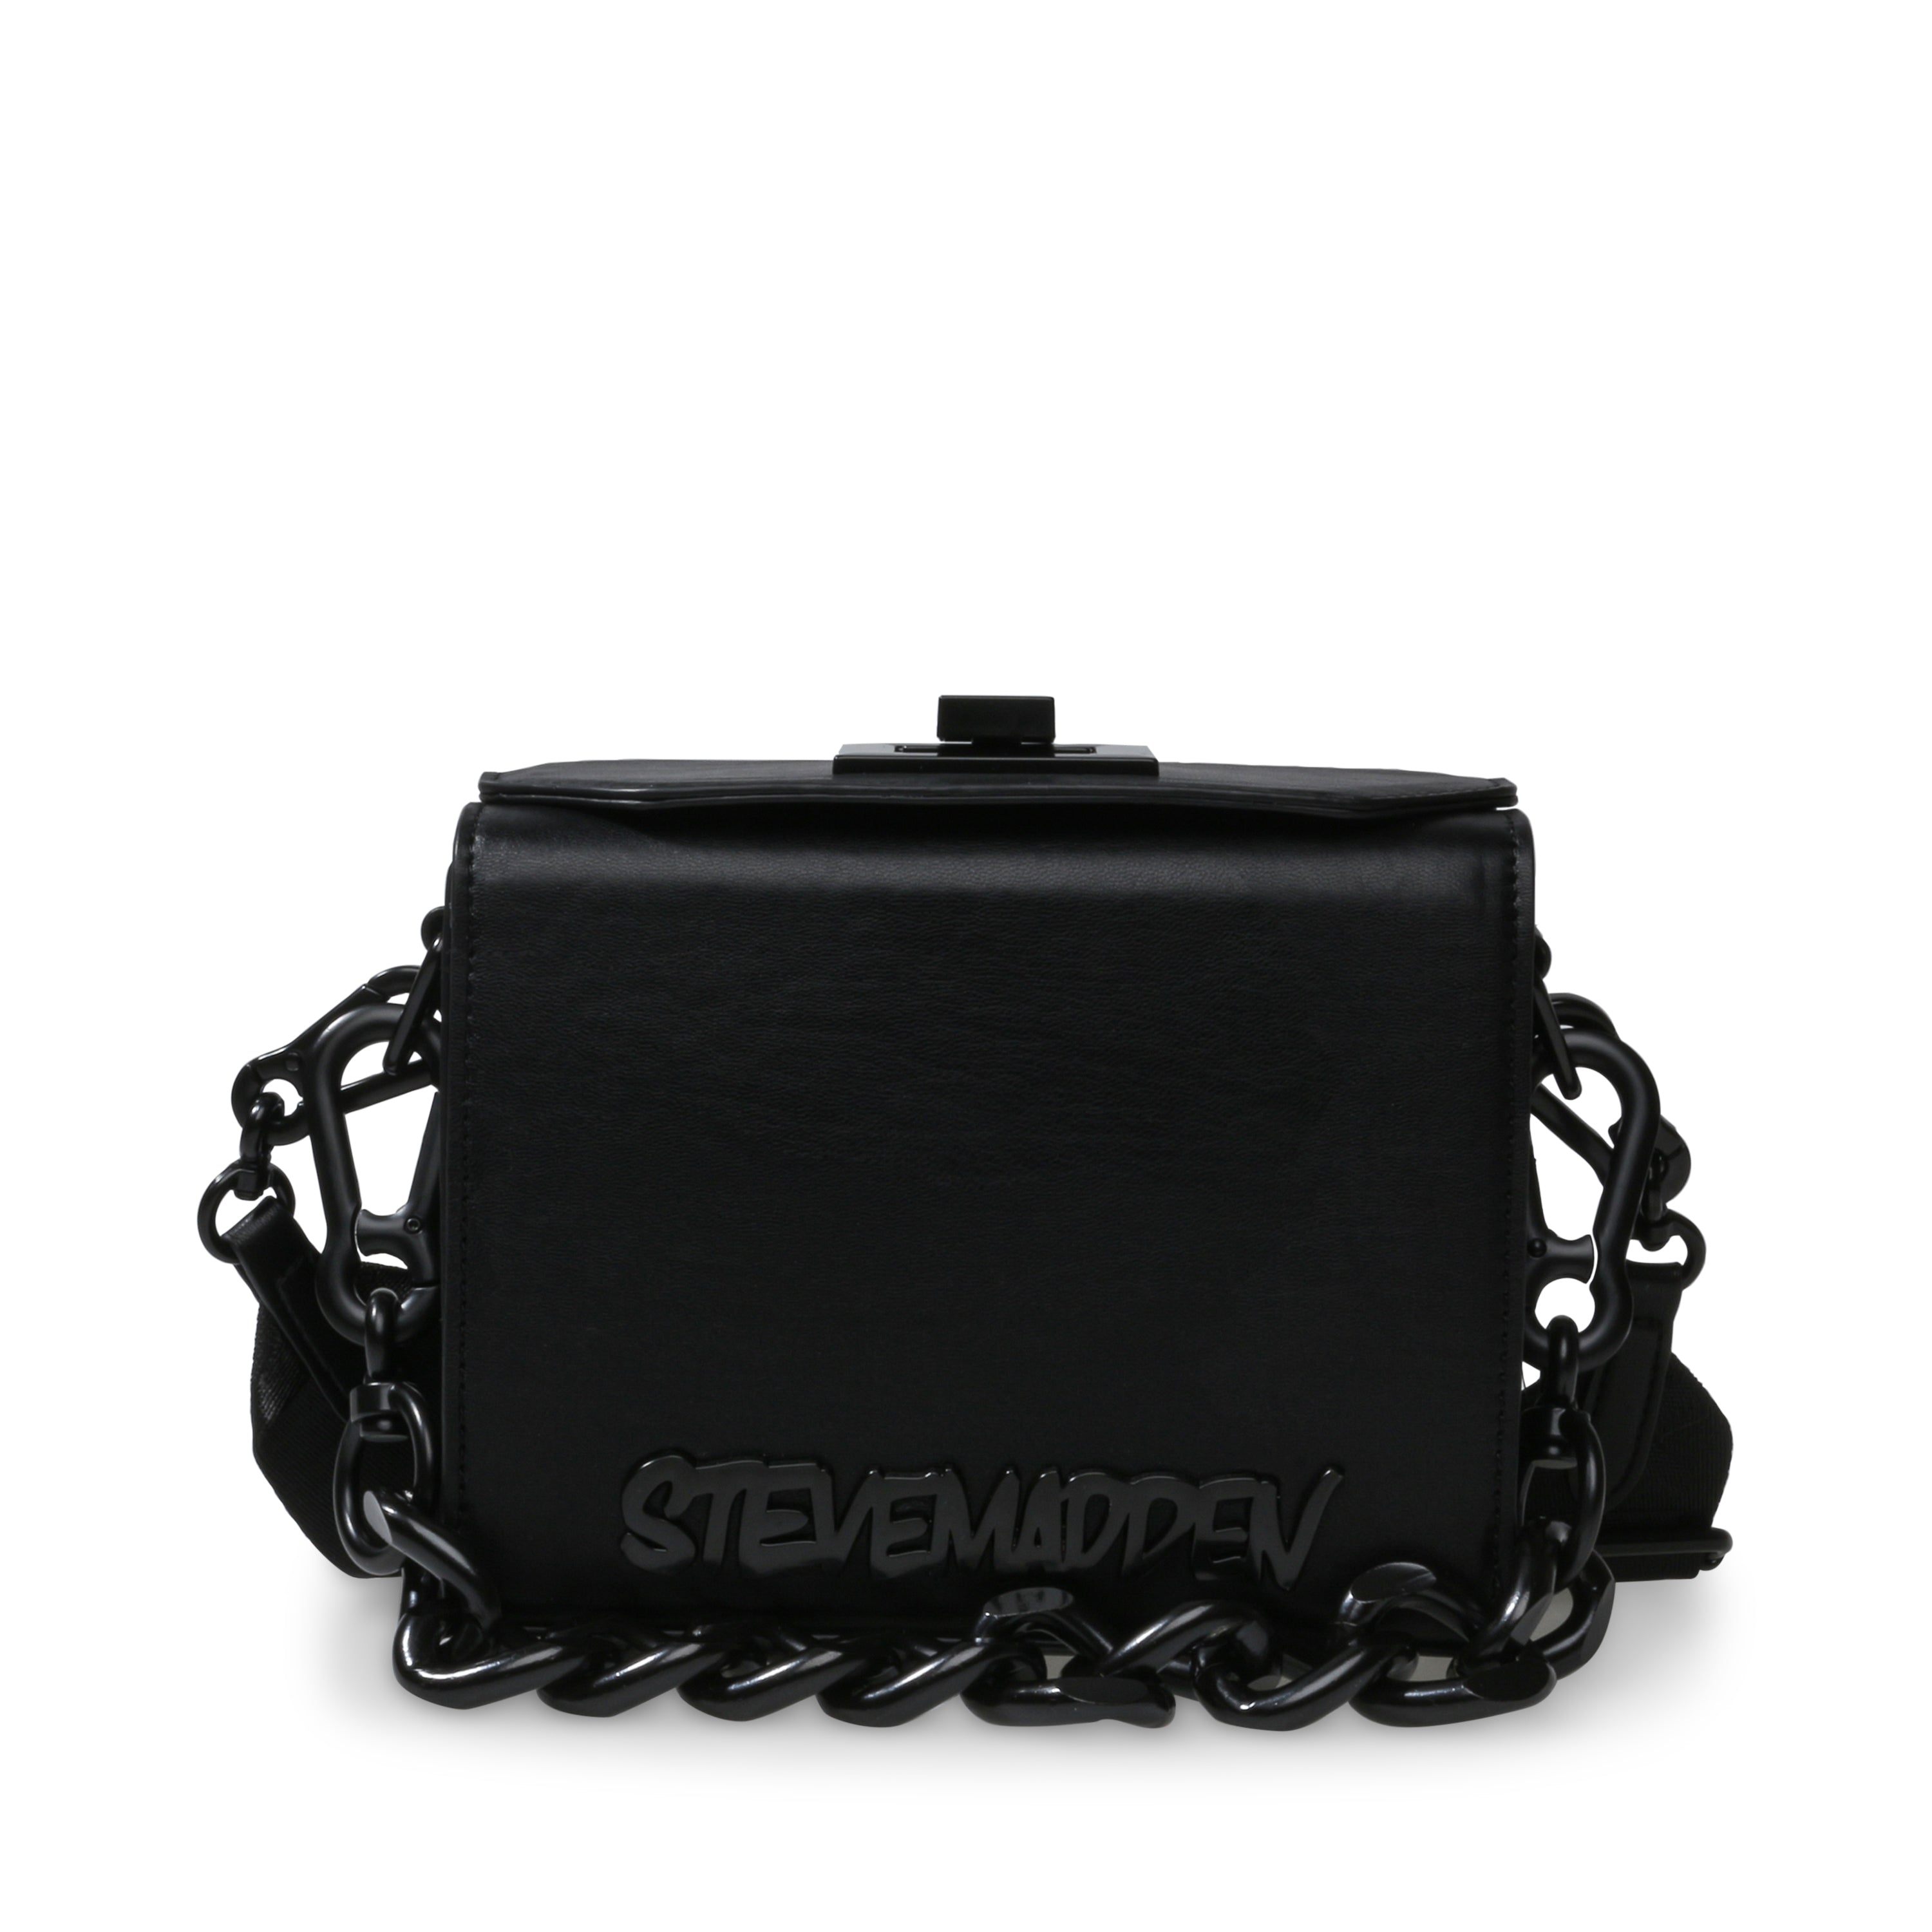 Bkinderg Crossbody bag BLACK- Hover Image